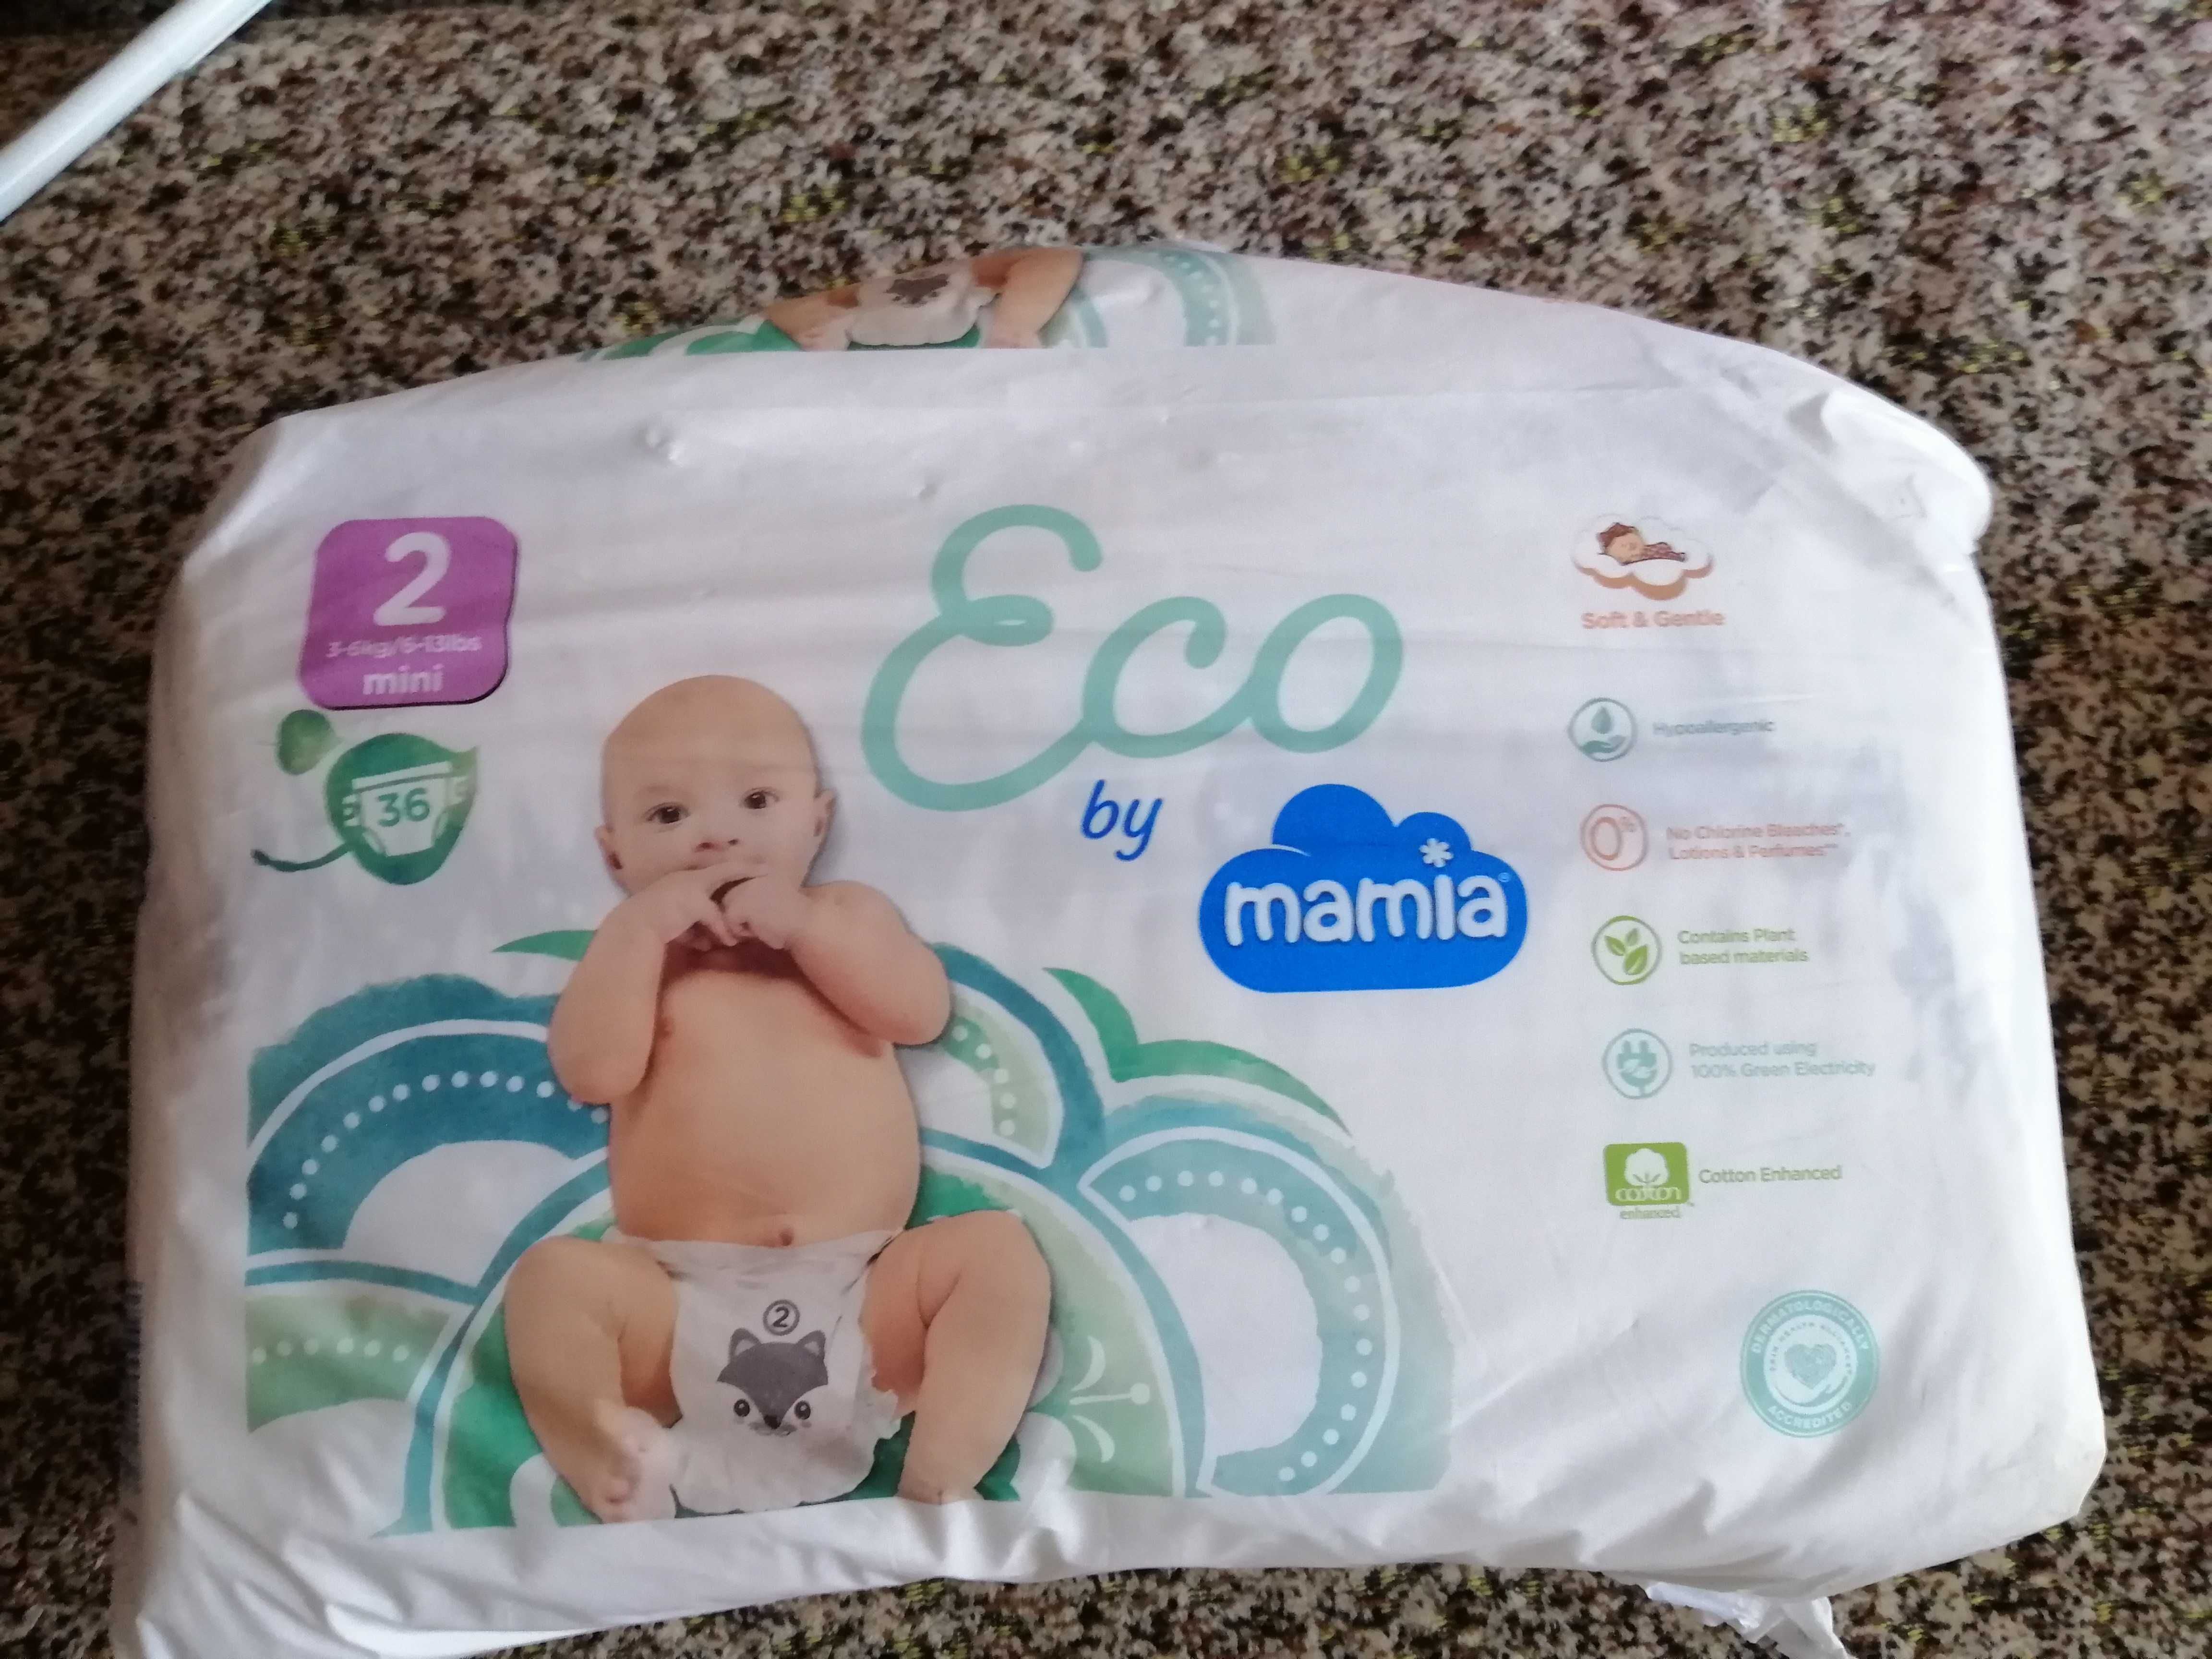 Памперсы mamia-Eco размер 2 (36шт) на 3-6кг.